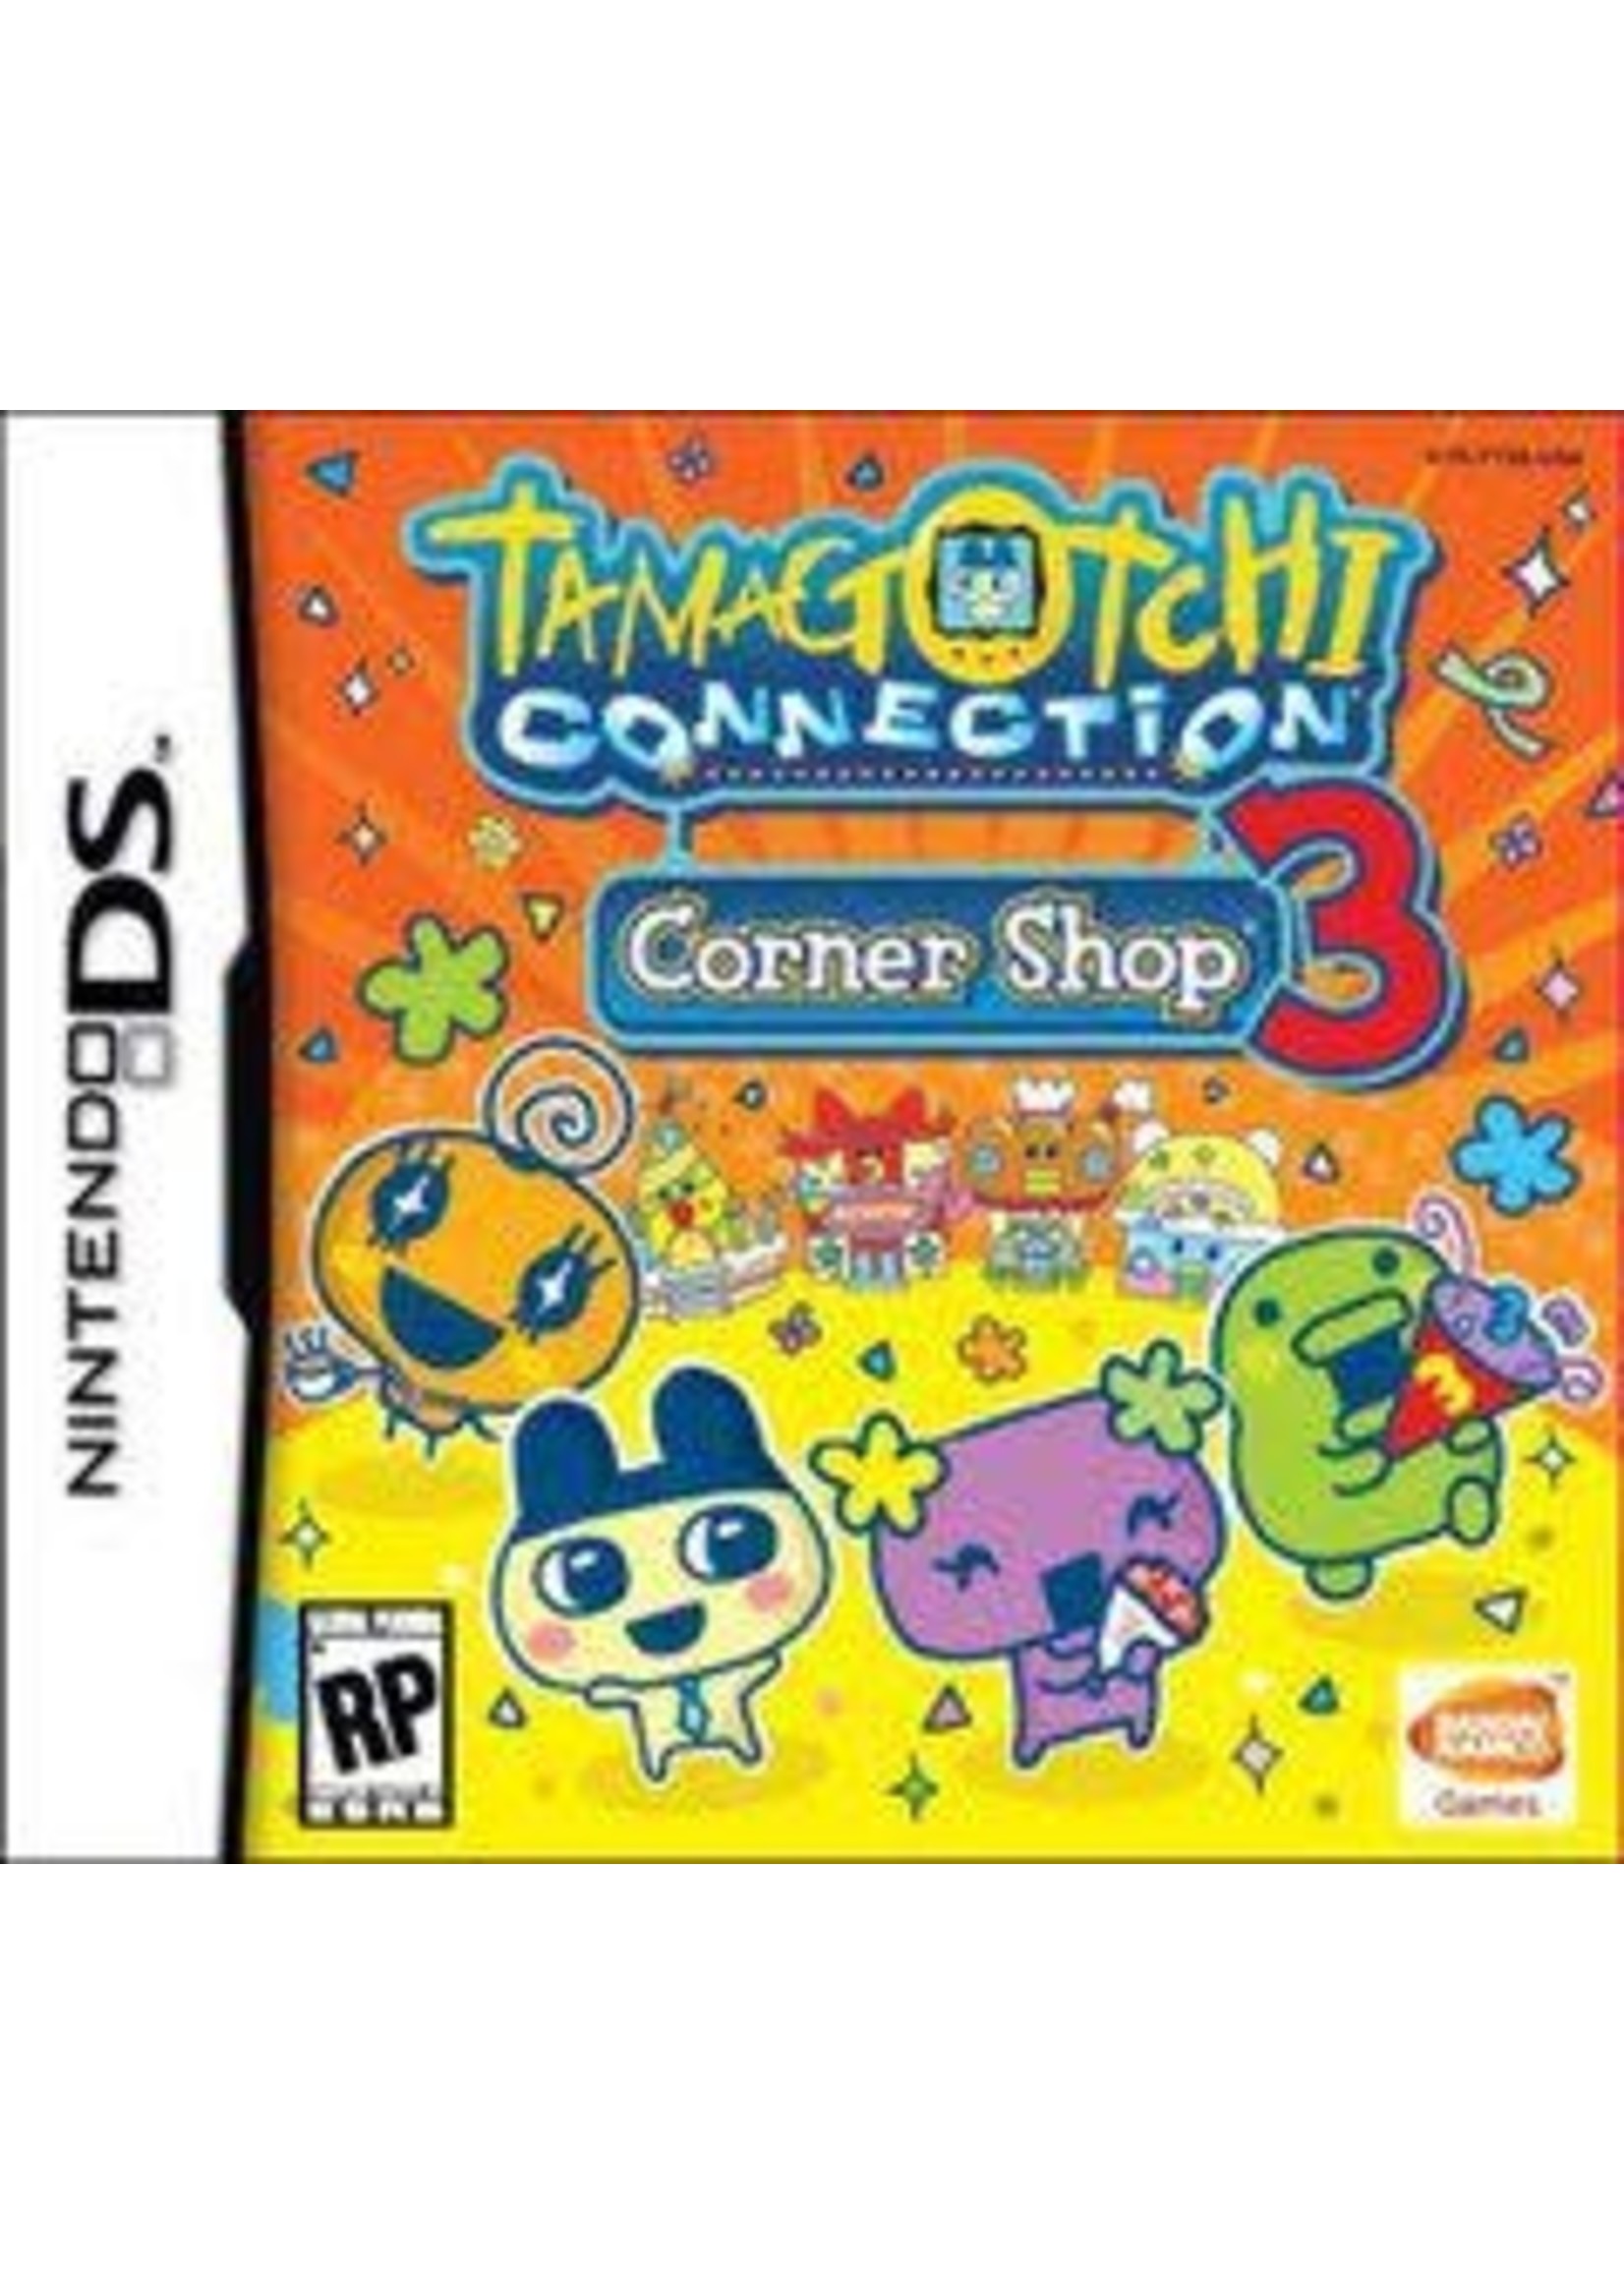 Tamagotchi Connection Corner Shop 3 Nintendo DS